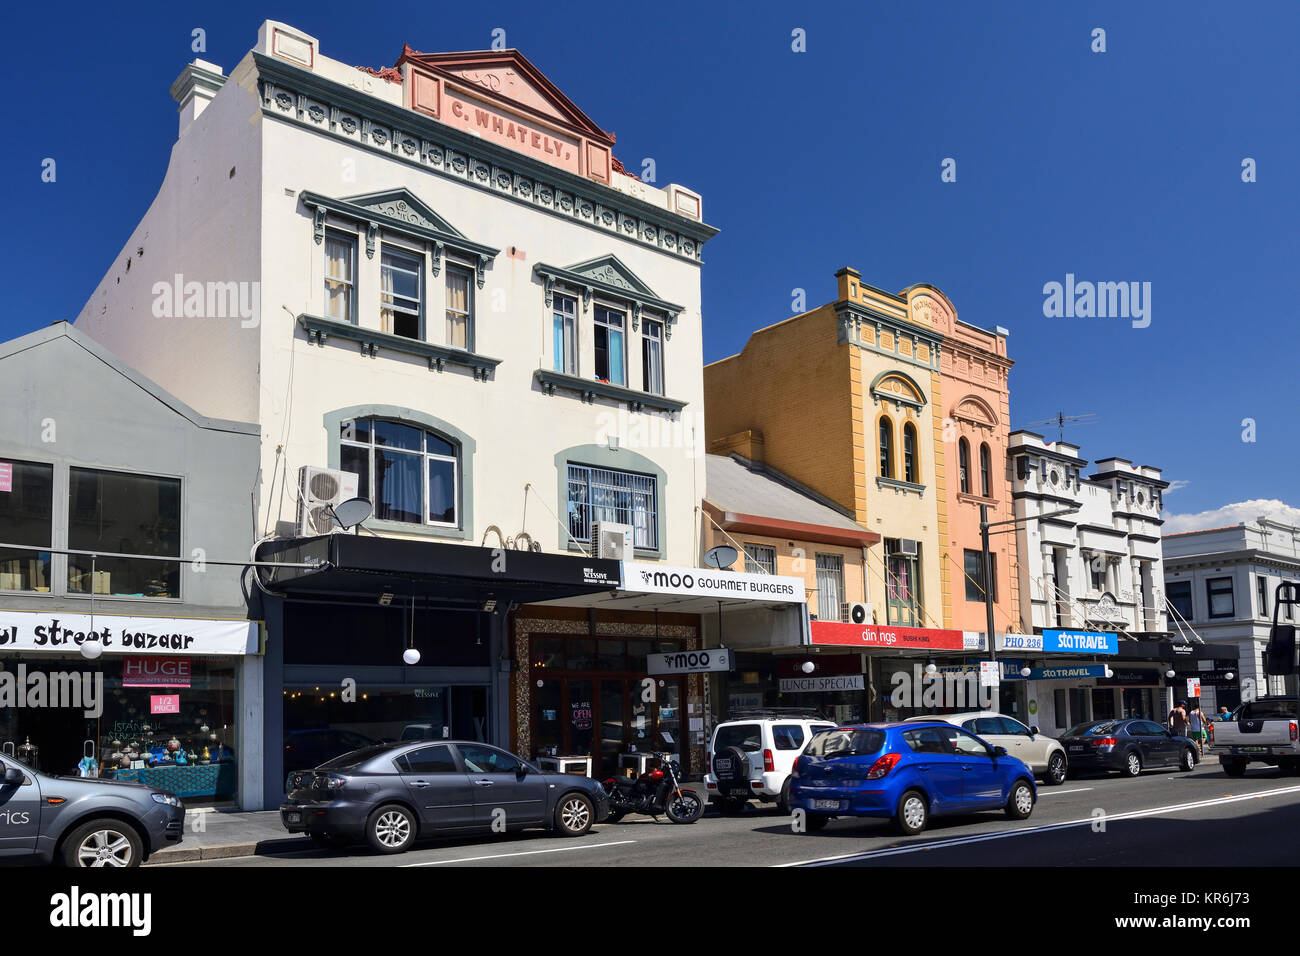 Edifici Vittoriani restaurati su King Street, la principale strada transitabile nel sobborgo di Newtown, Sydney, Nuovo Galles del Sud, Australia Foto Stock